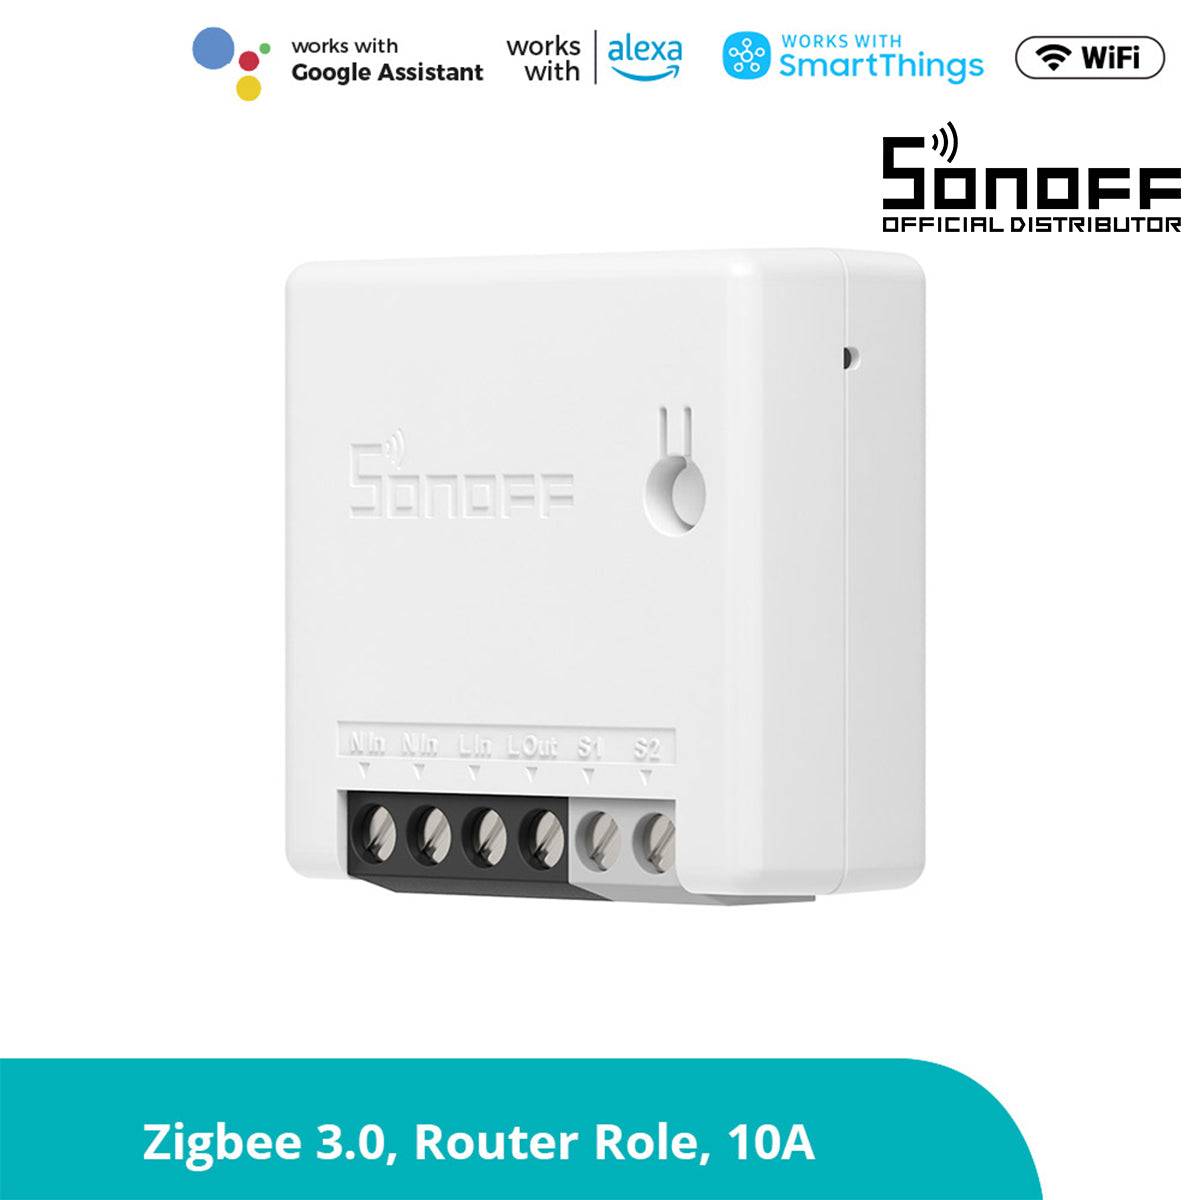 GloboStar® 80045 SONOFF ZBMINI-R3 - Zigbee Wireless Smart Switch Two Way Dual Relay - 2 Output Channel - ledmania.gr